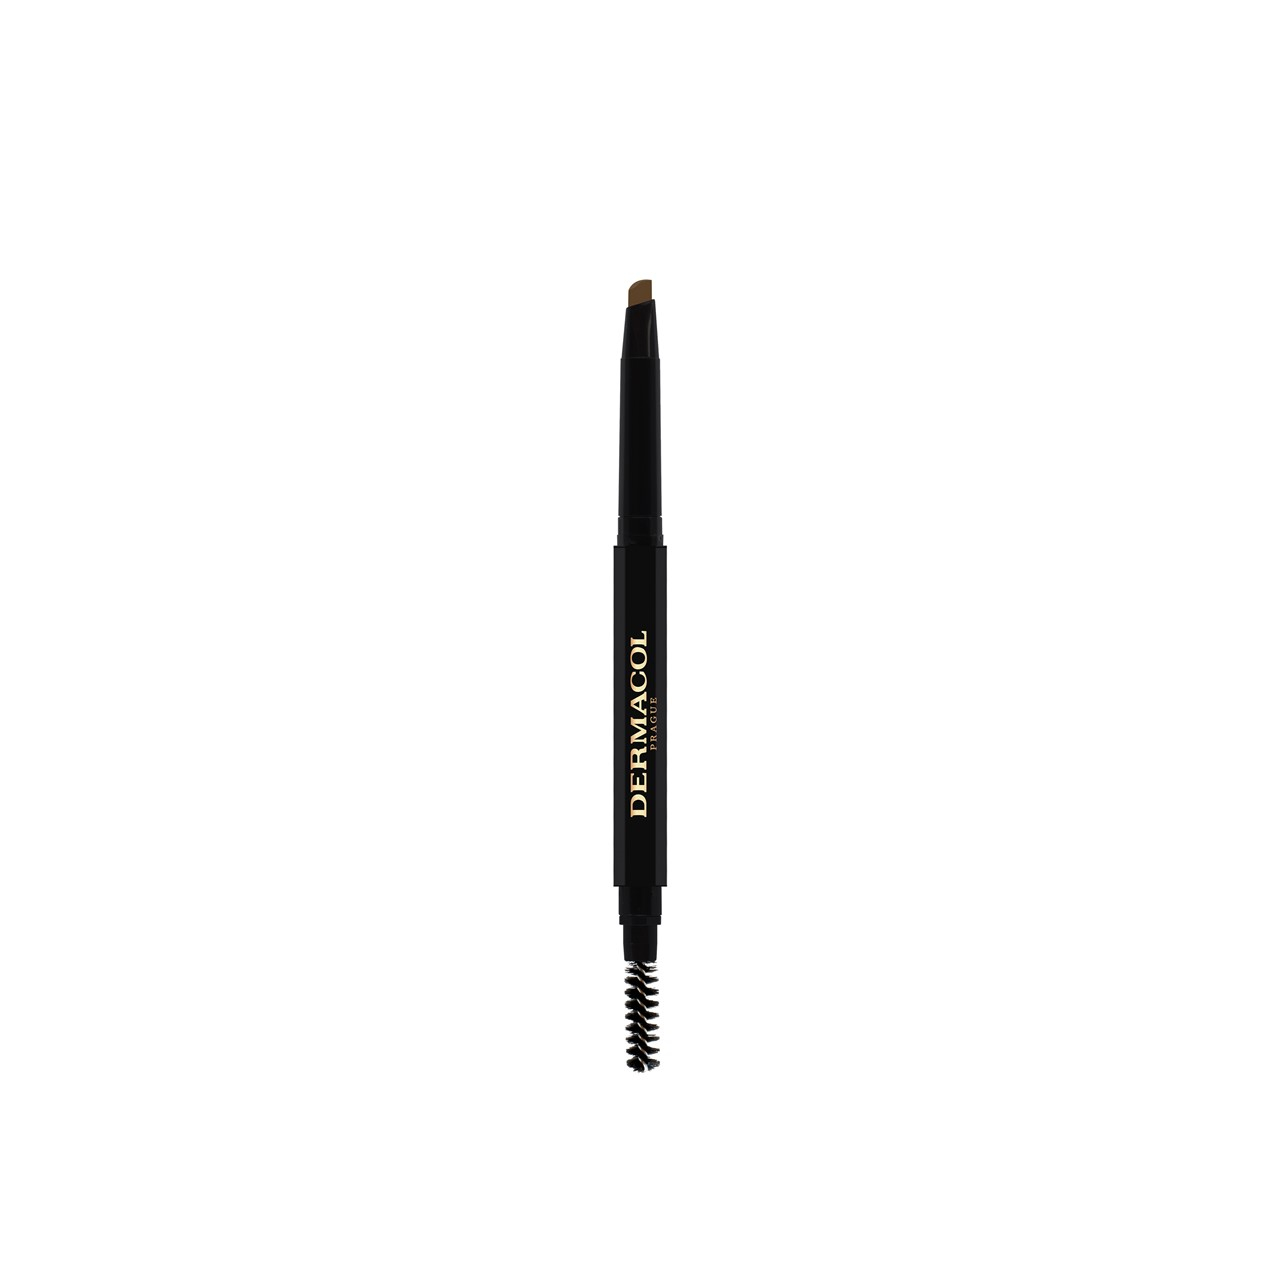 Dermacol Eyebrow Perfector Pencil 03